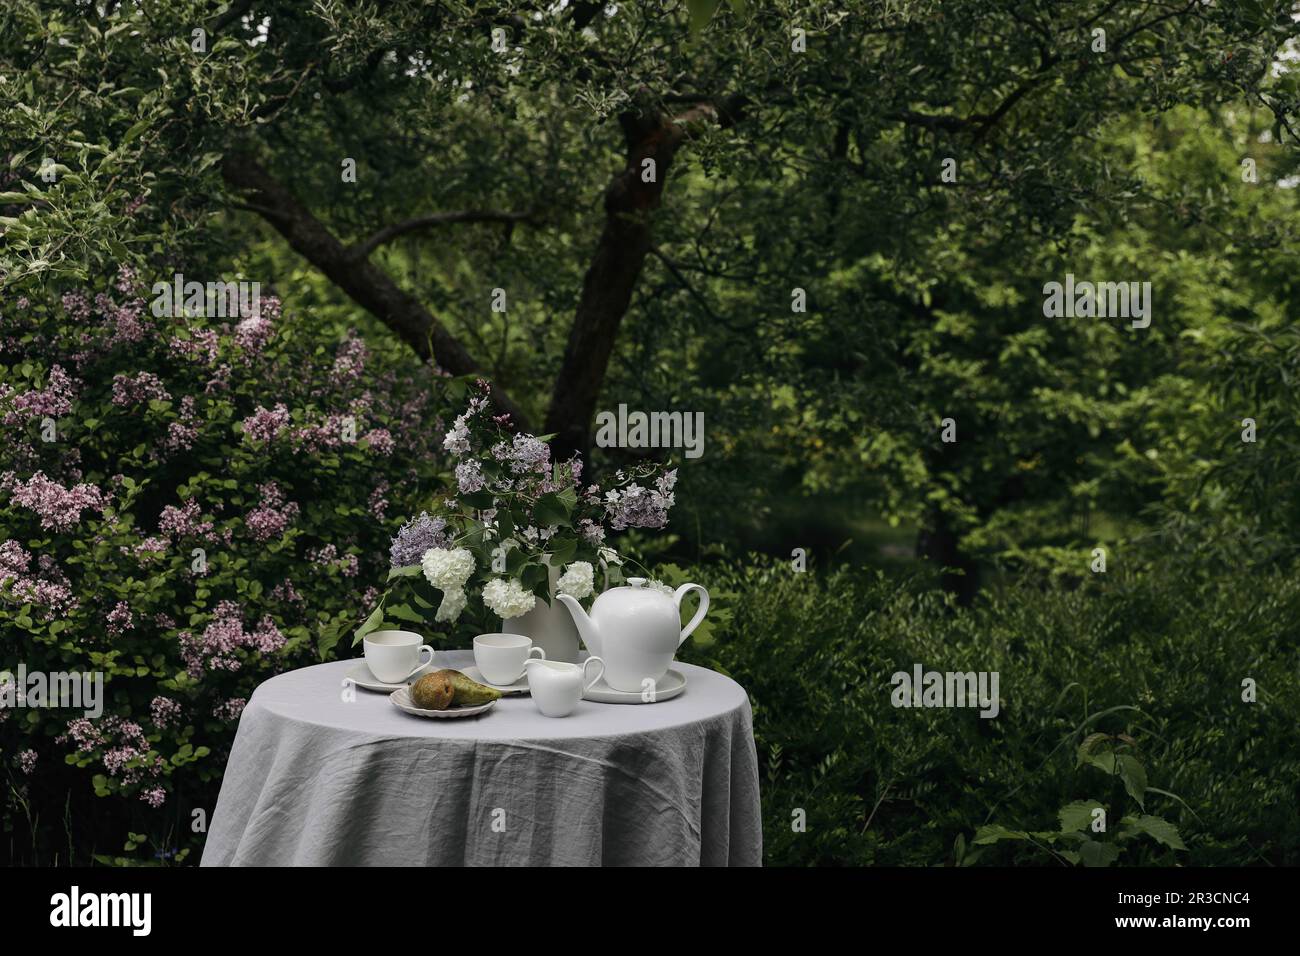 Gemütliche Teeparty im wunderschönen Garten. Teekanne, Tassen Kaffee, Milchkrug und Birnenfrucht auf dem Tisch mit Leinentischtuch. Ein Strauß lila Flieder Stockfoto